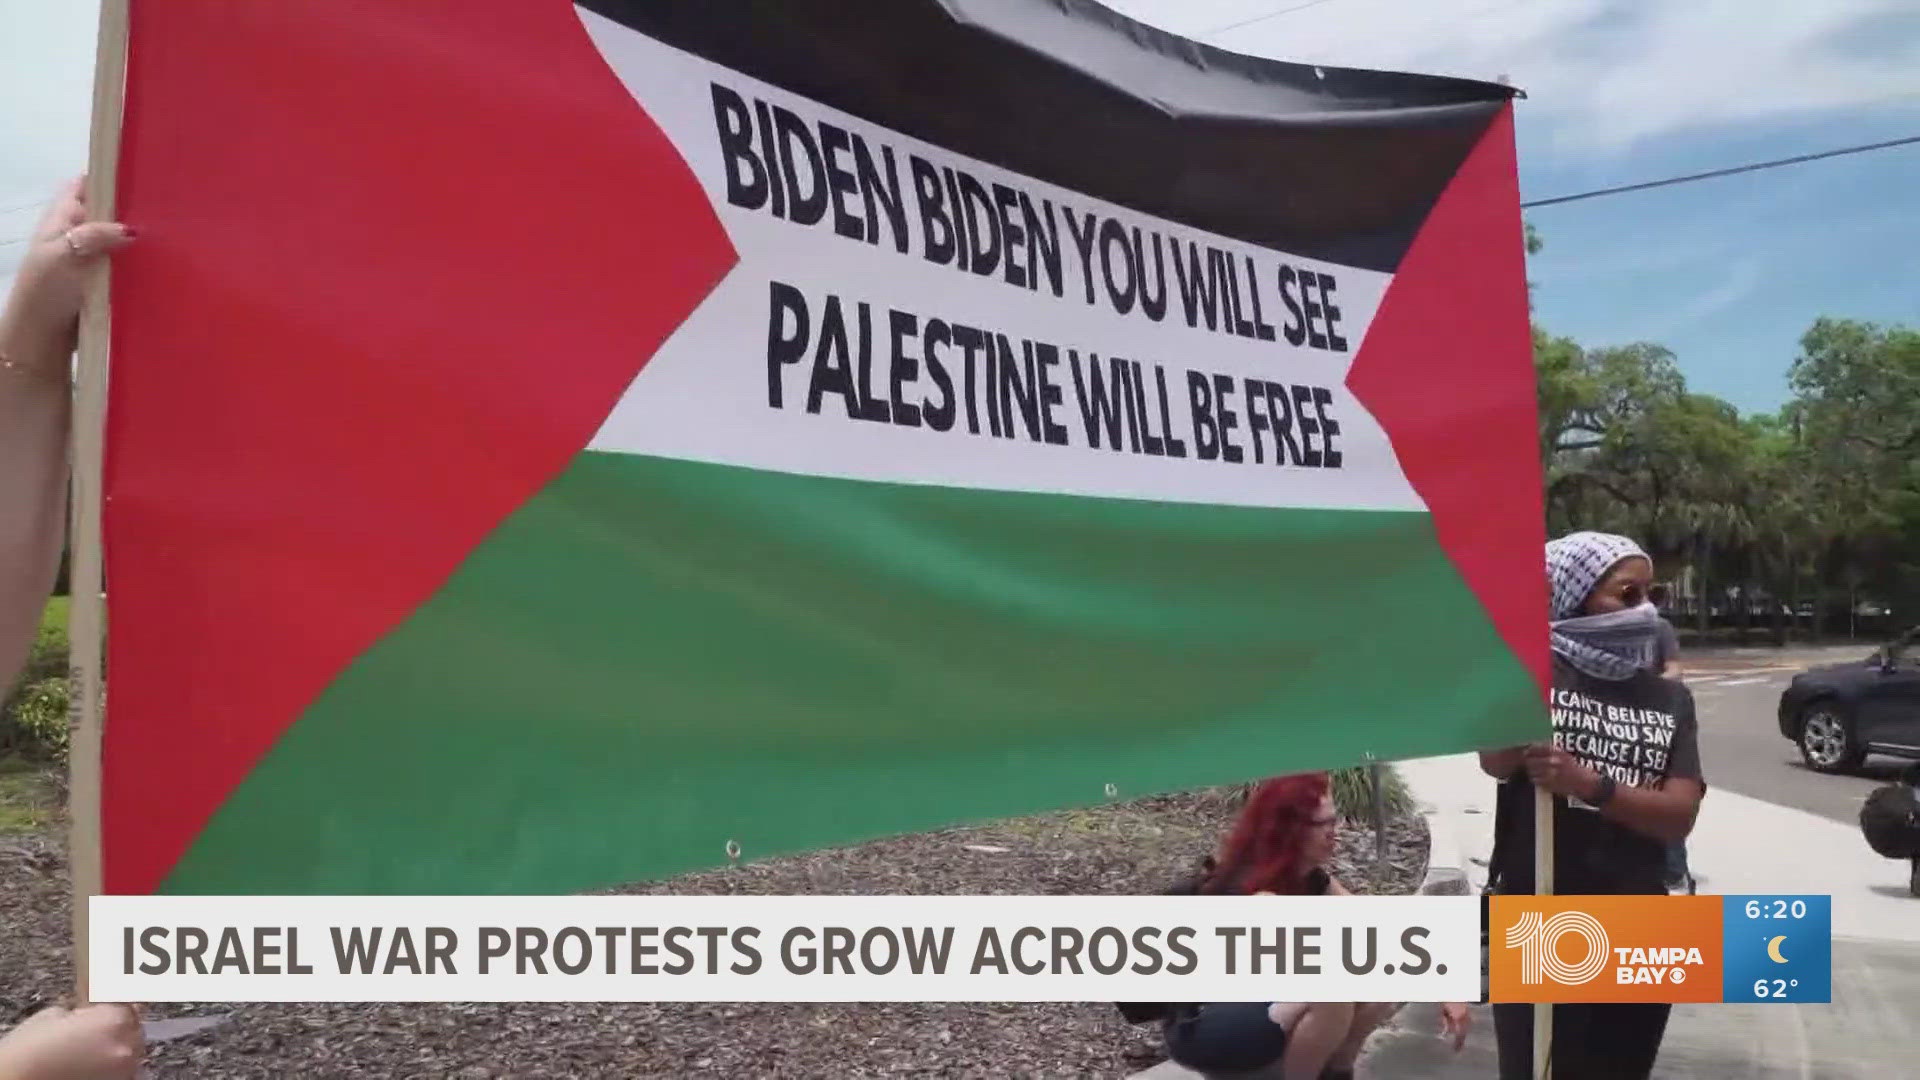 Pro-Palestine demonstrators flooded Tampa Bay Boulevard protesting Biden's arrival in Tampa.